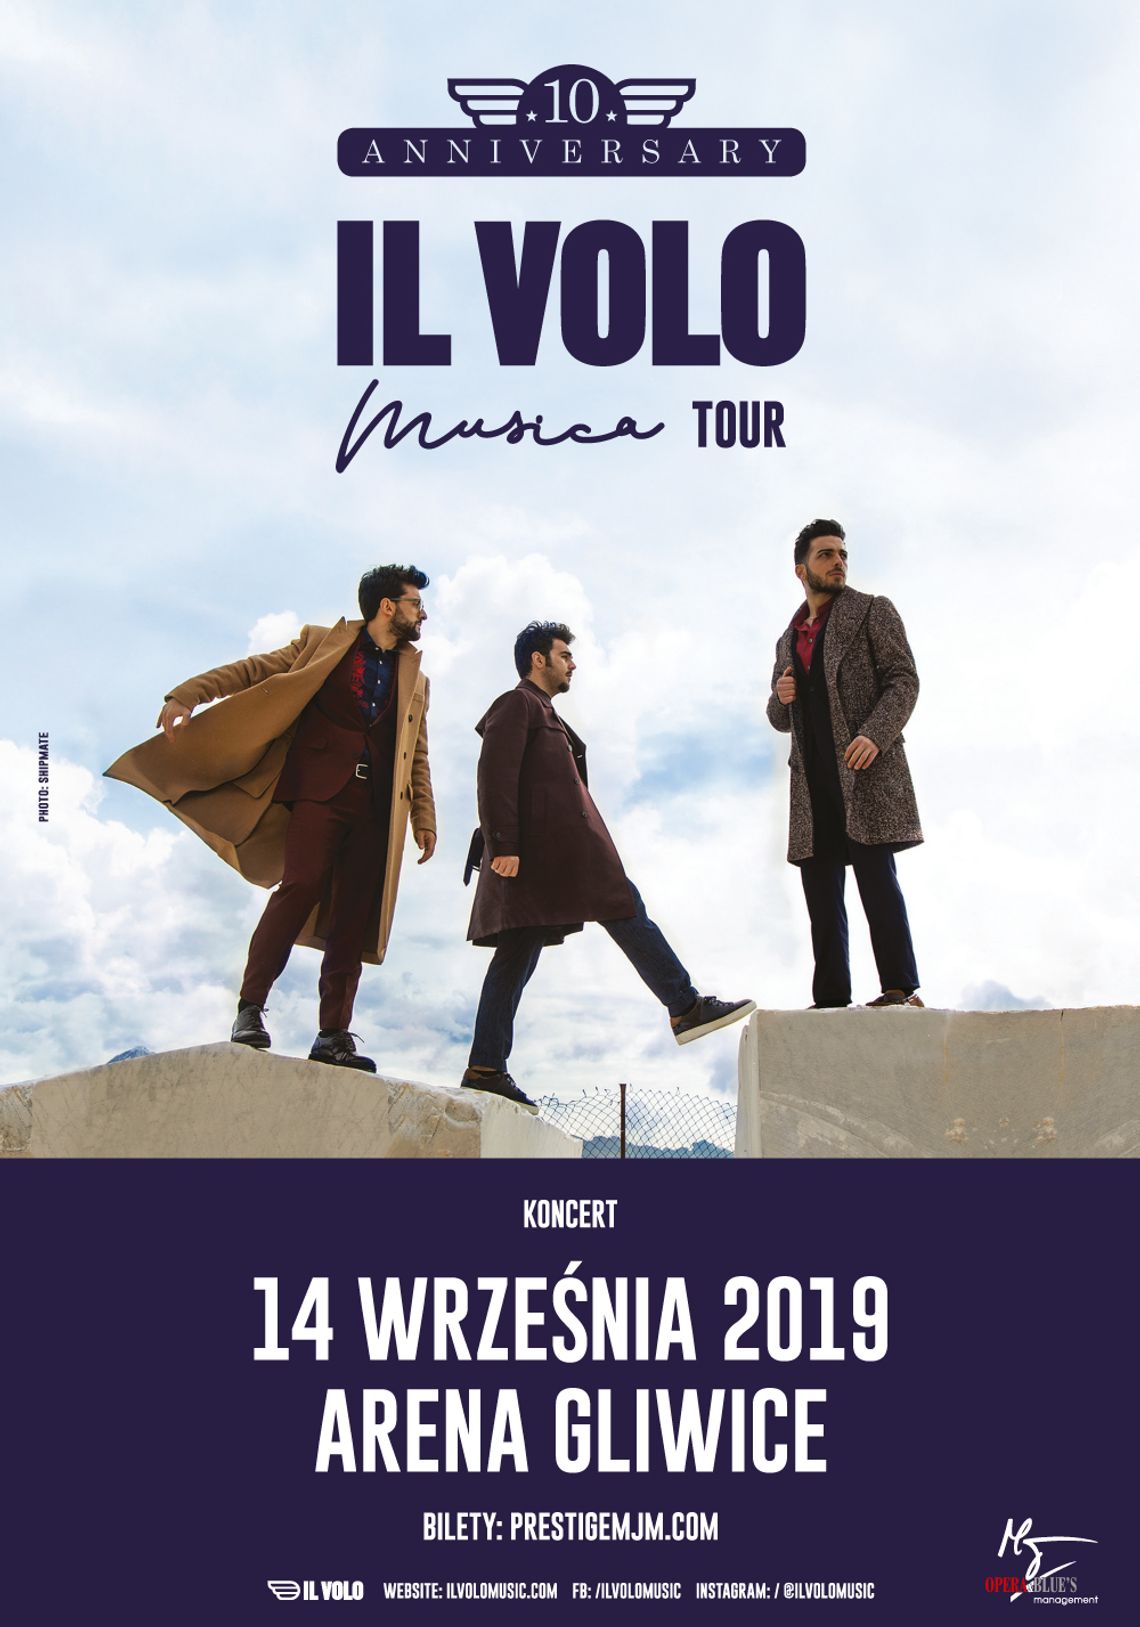 Włoskie trio IL VOLO świętuje 10 rocznicę istnienia - KONCERT - Arena Gliwice